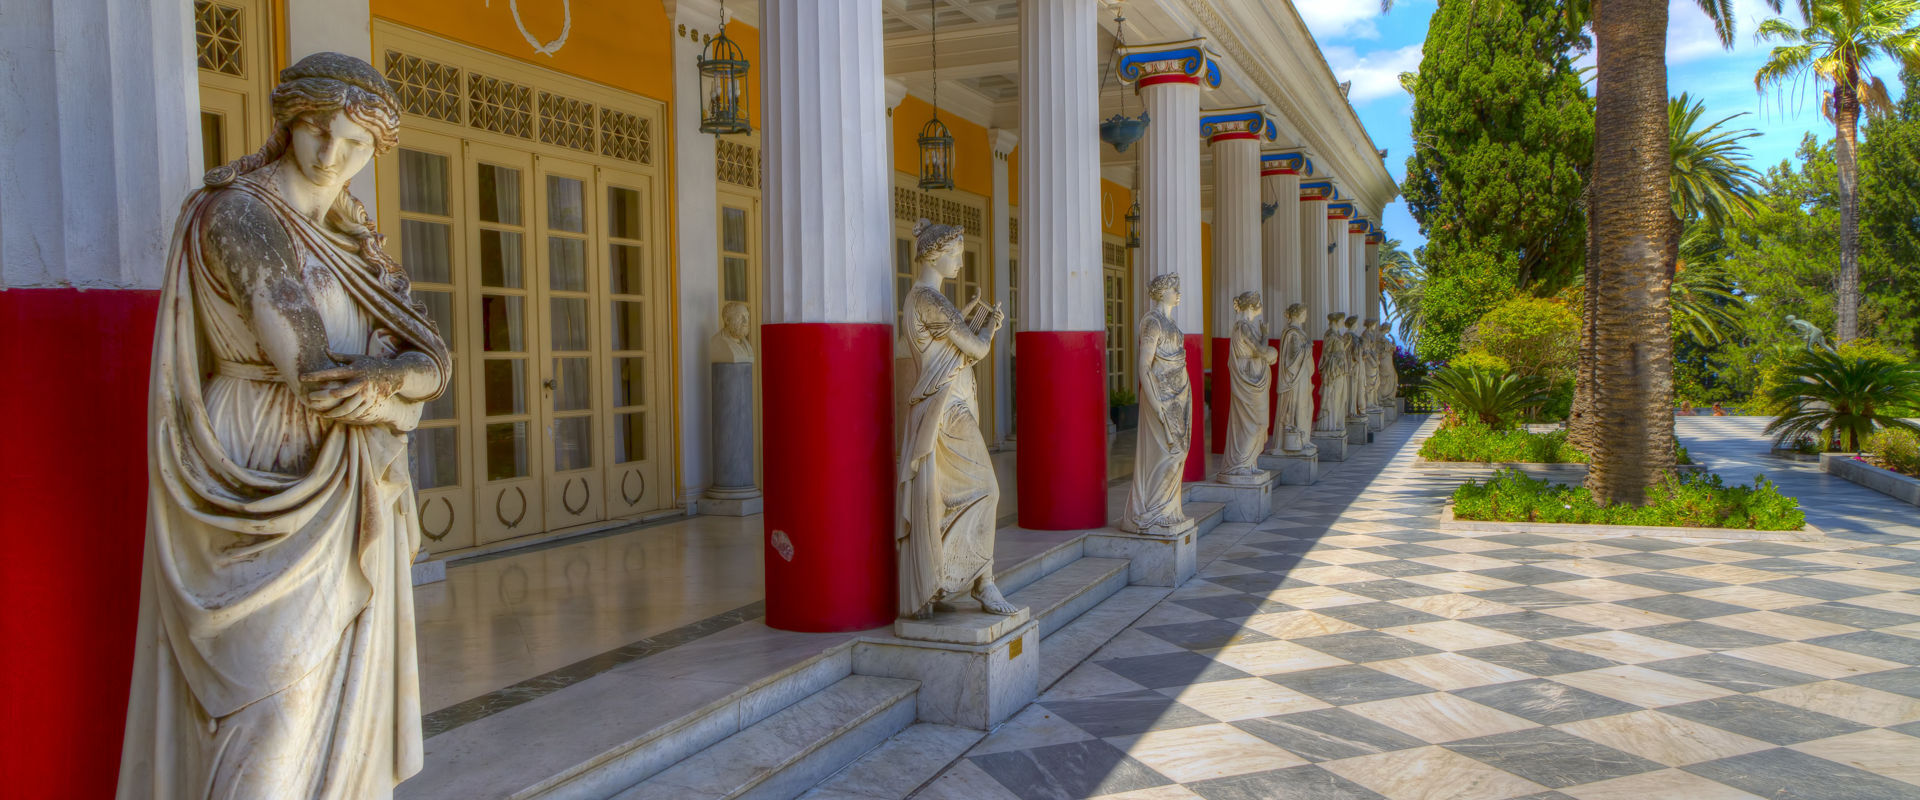 Achillion palace, Corfu island, Greece